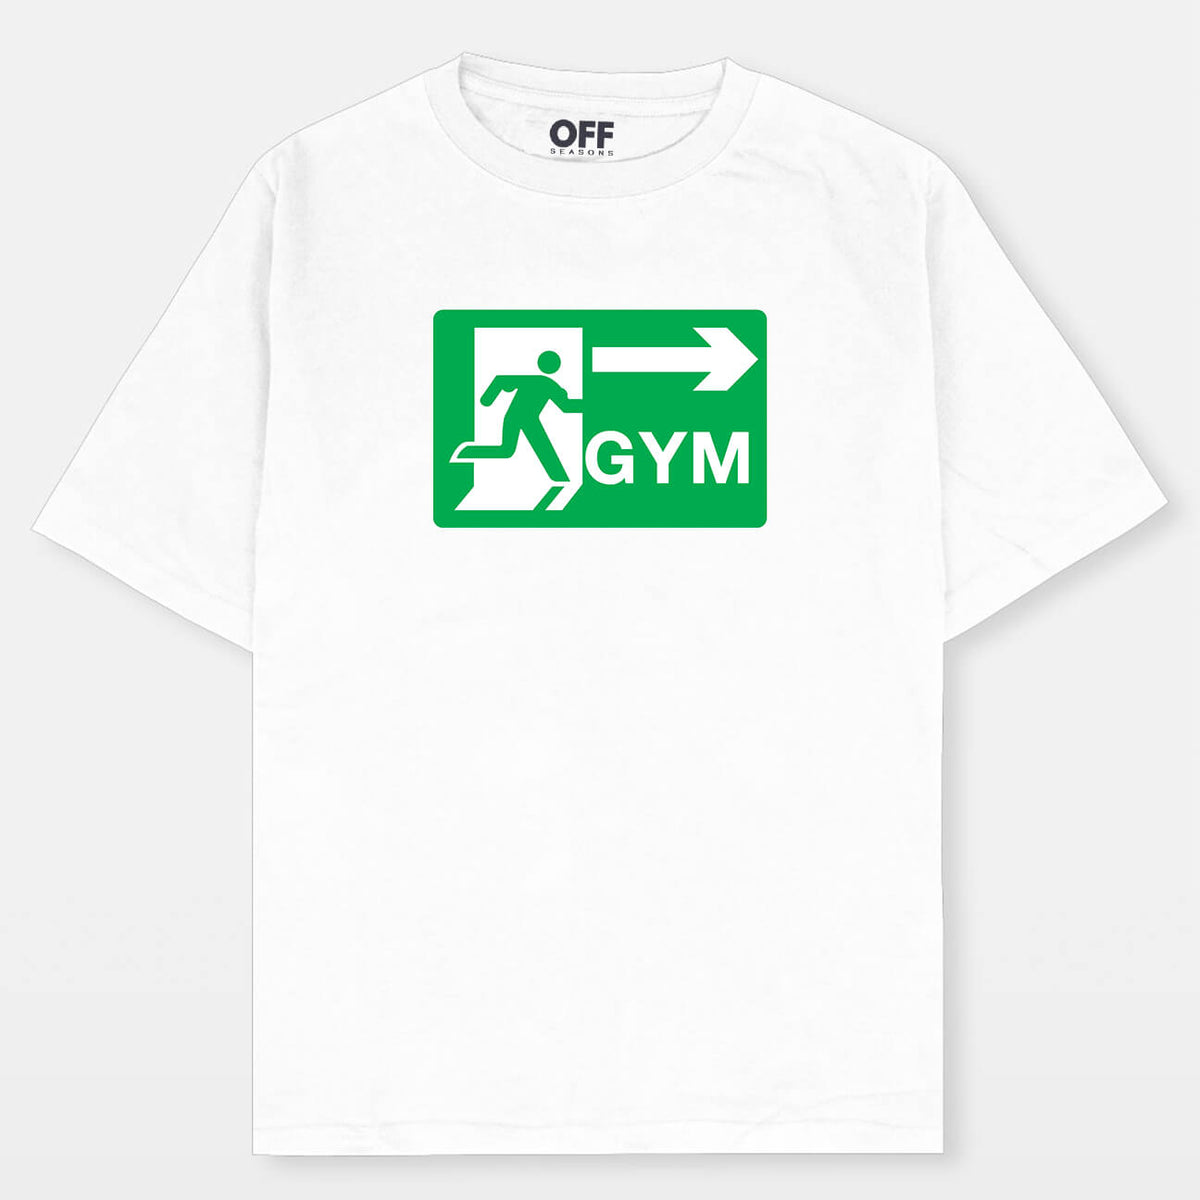 Raskol Apparel  Gym art, Gym graphic tees, Graphic tshirt design